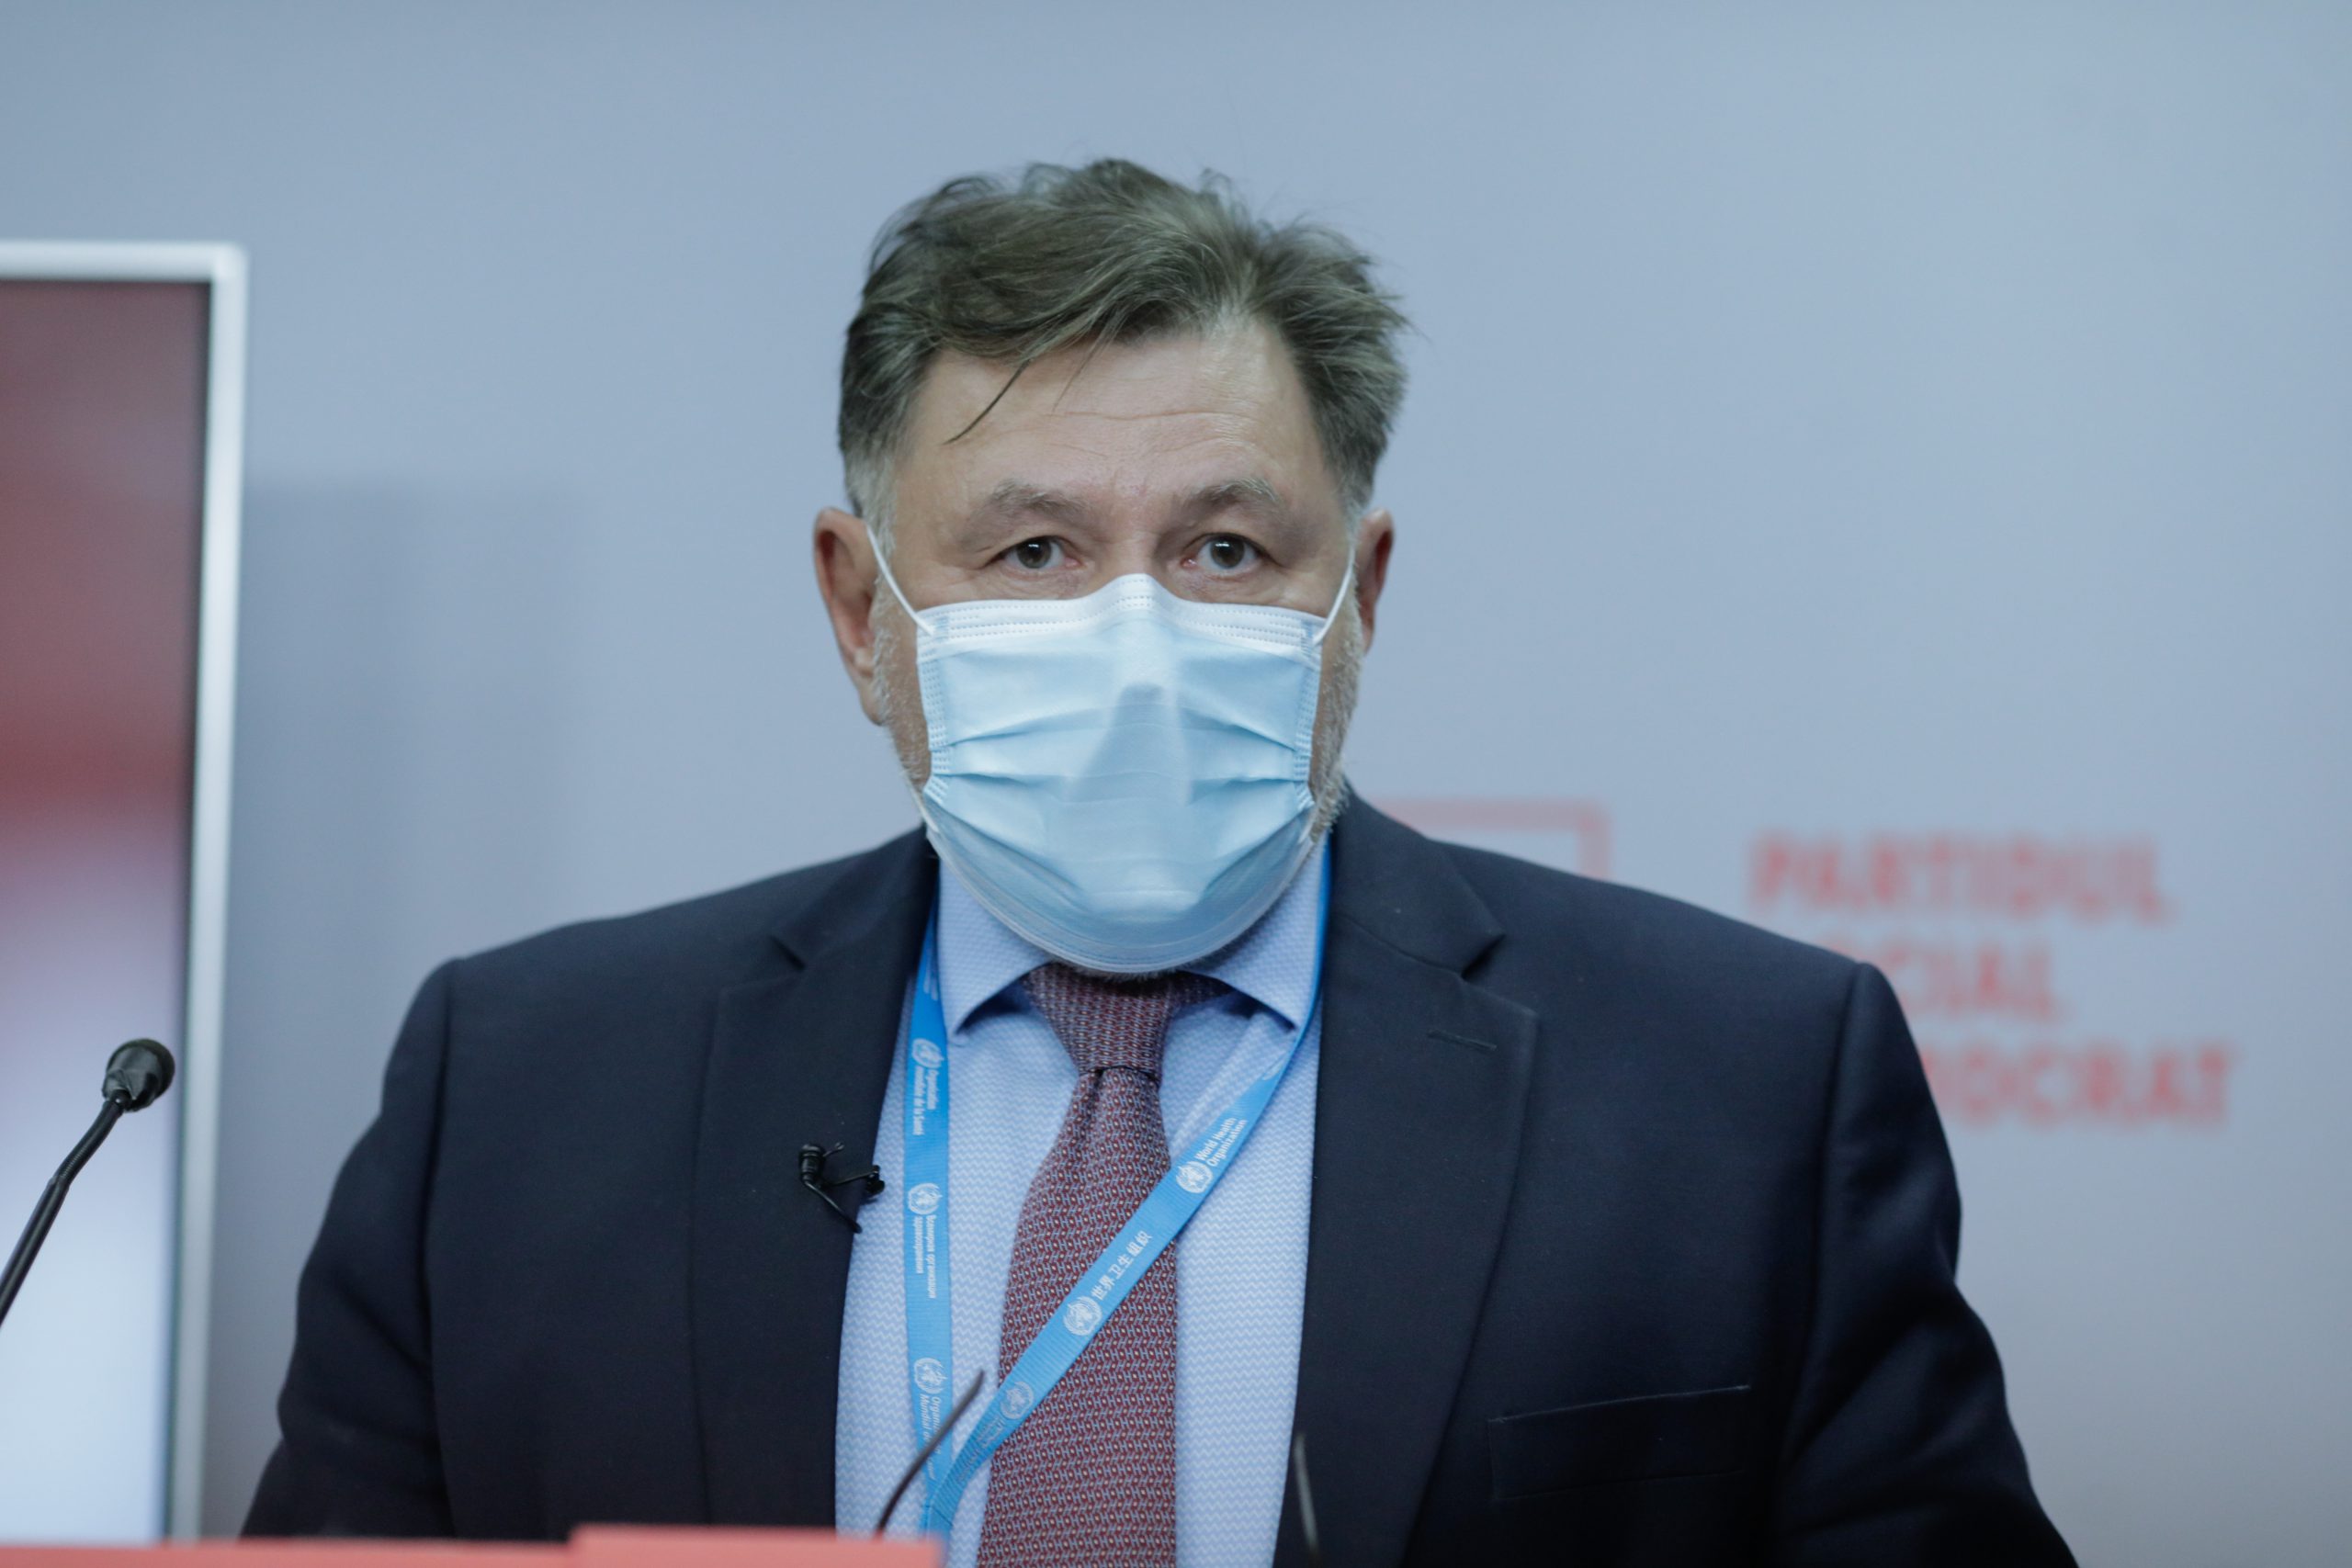 Alexandru Rafila și Sorin Grindeanu sustin o conferinta de presa in care este prezentat planul PSD de combatere a pandemiei de COVID-19, marti 27 octombrie 2020. Inquam Photos / George Calin